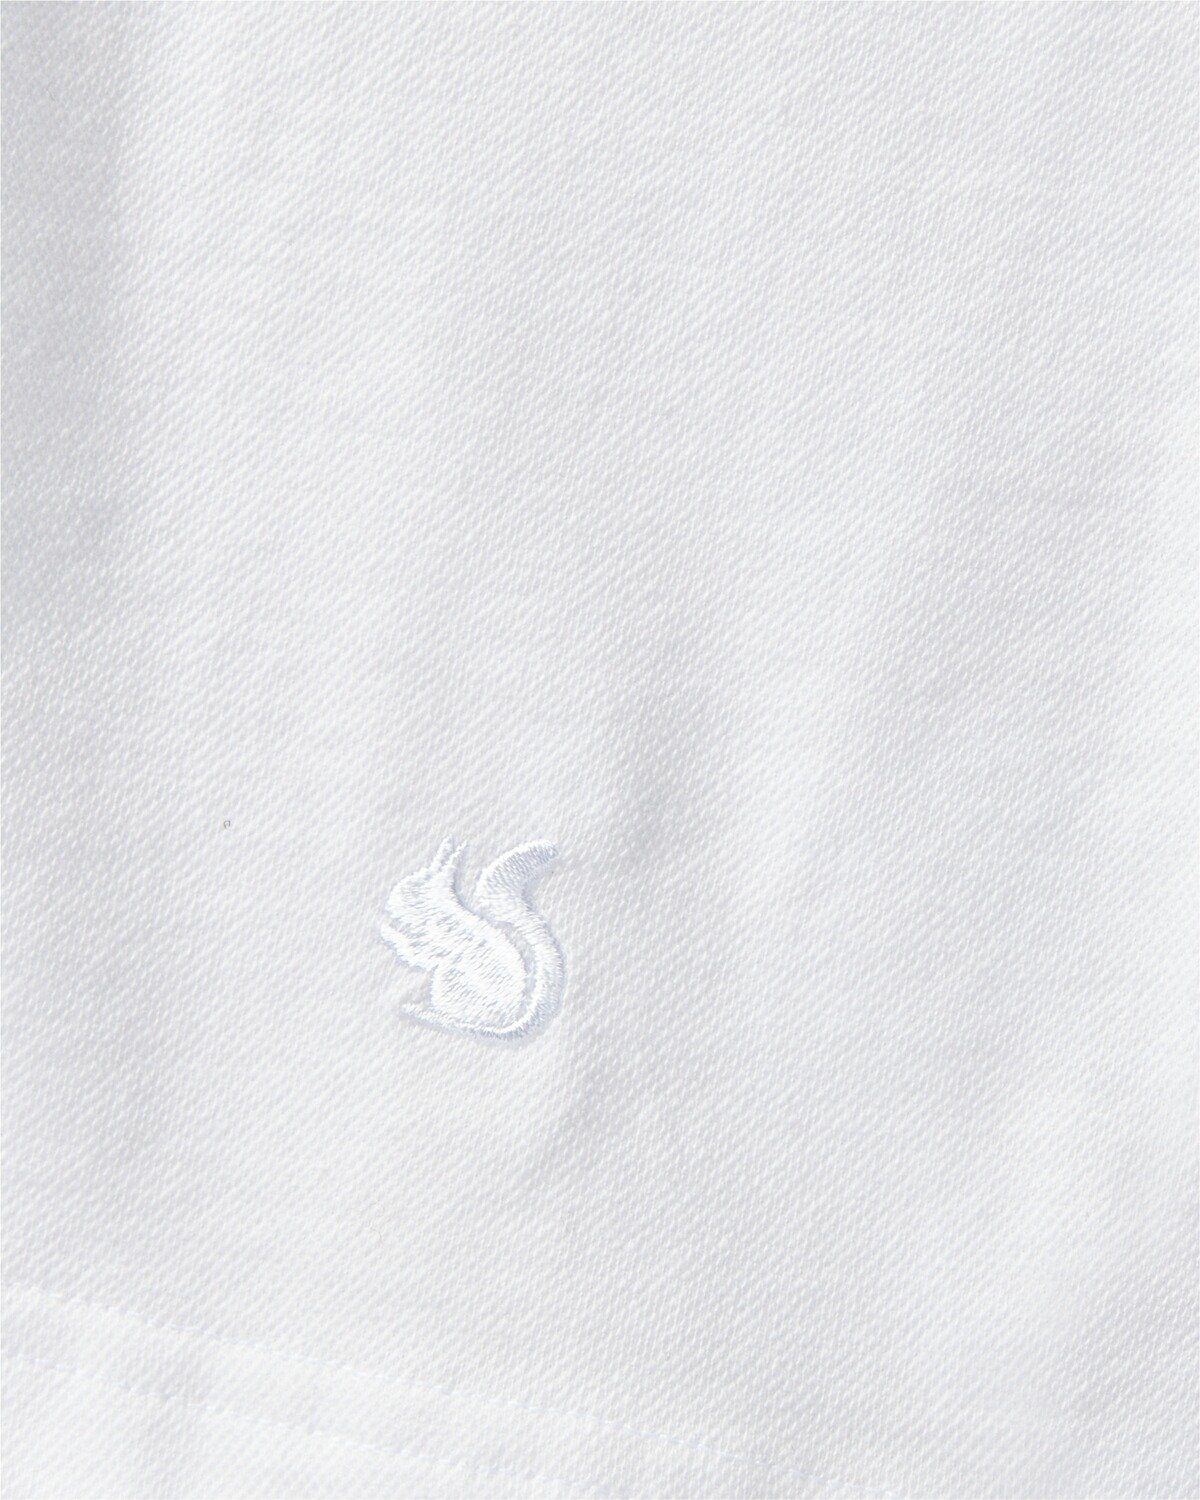 Poloshirt Piqué-Poloshirt Highmoor Zipper Weiß mit